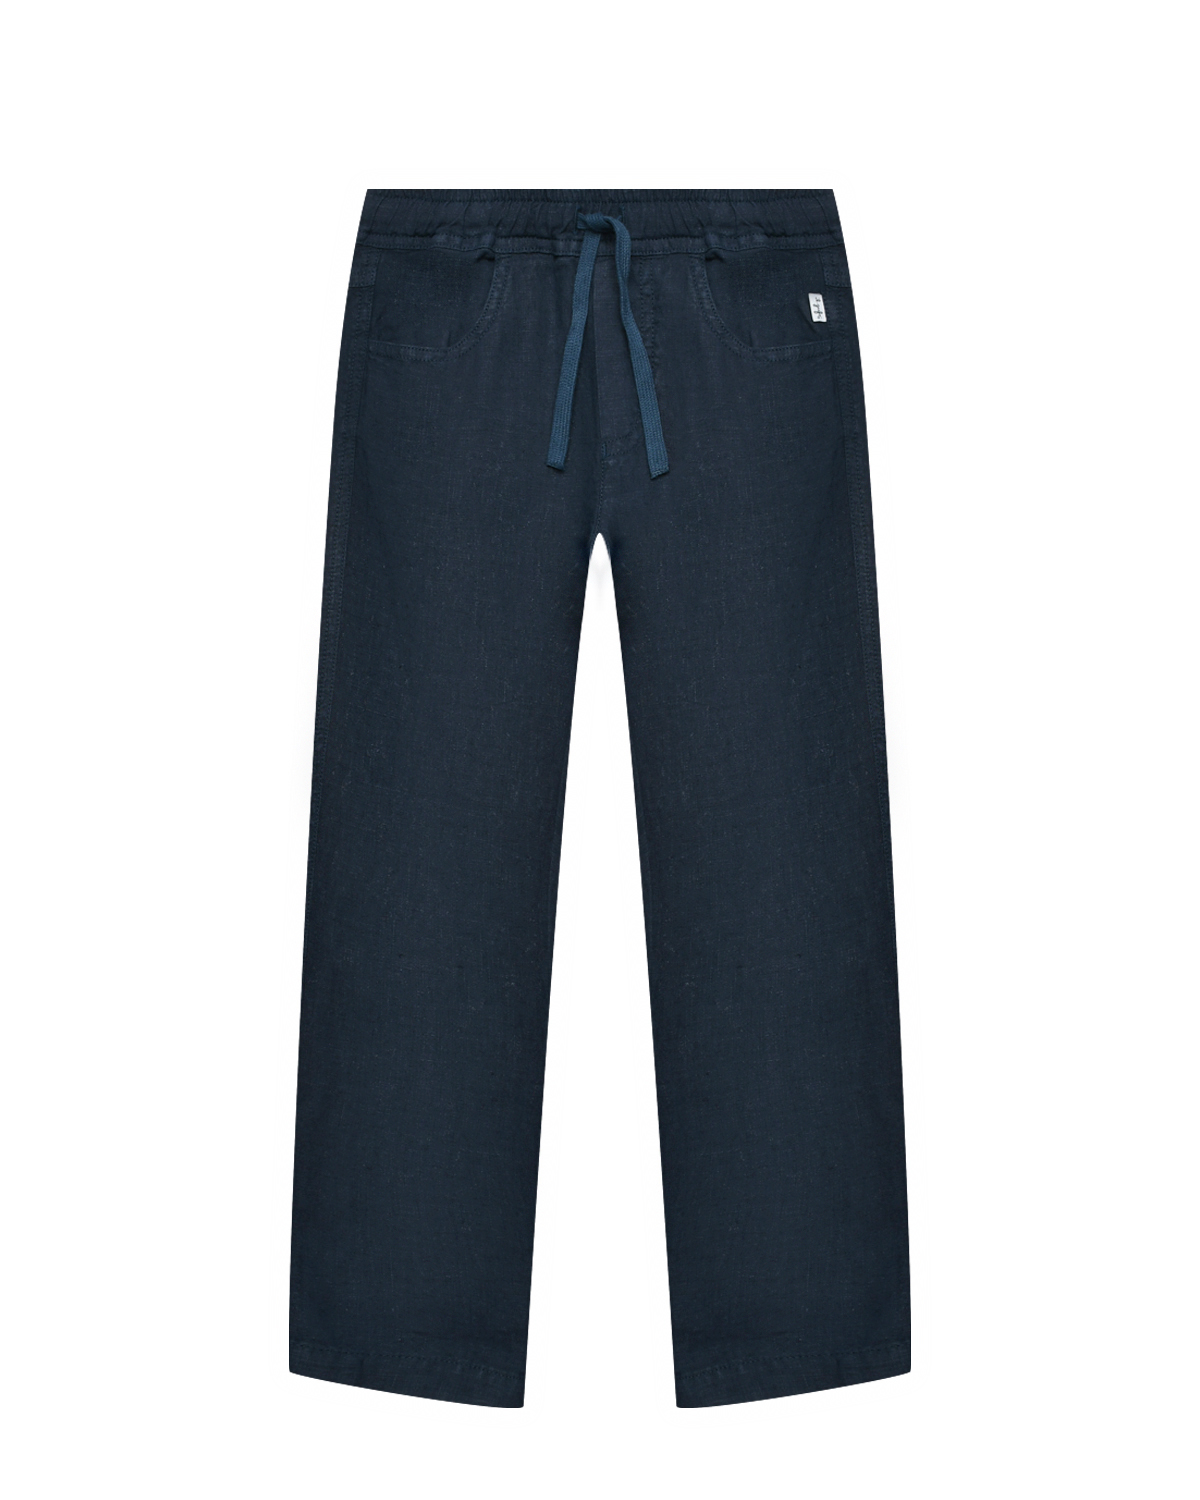 Льняные брюки, синие IL Gufo, размер 140, цвет синий